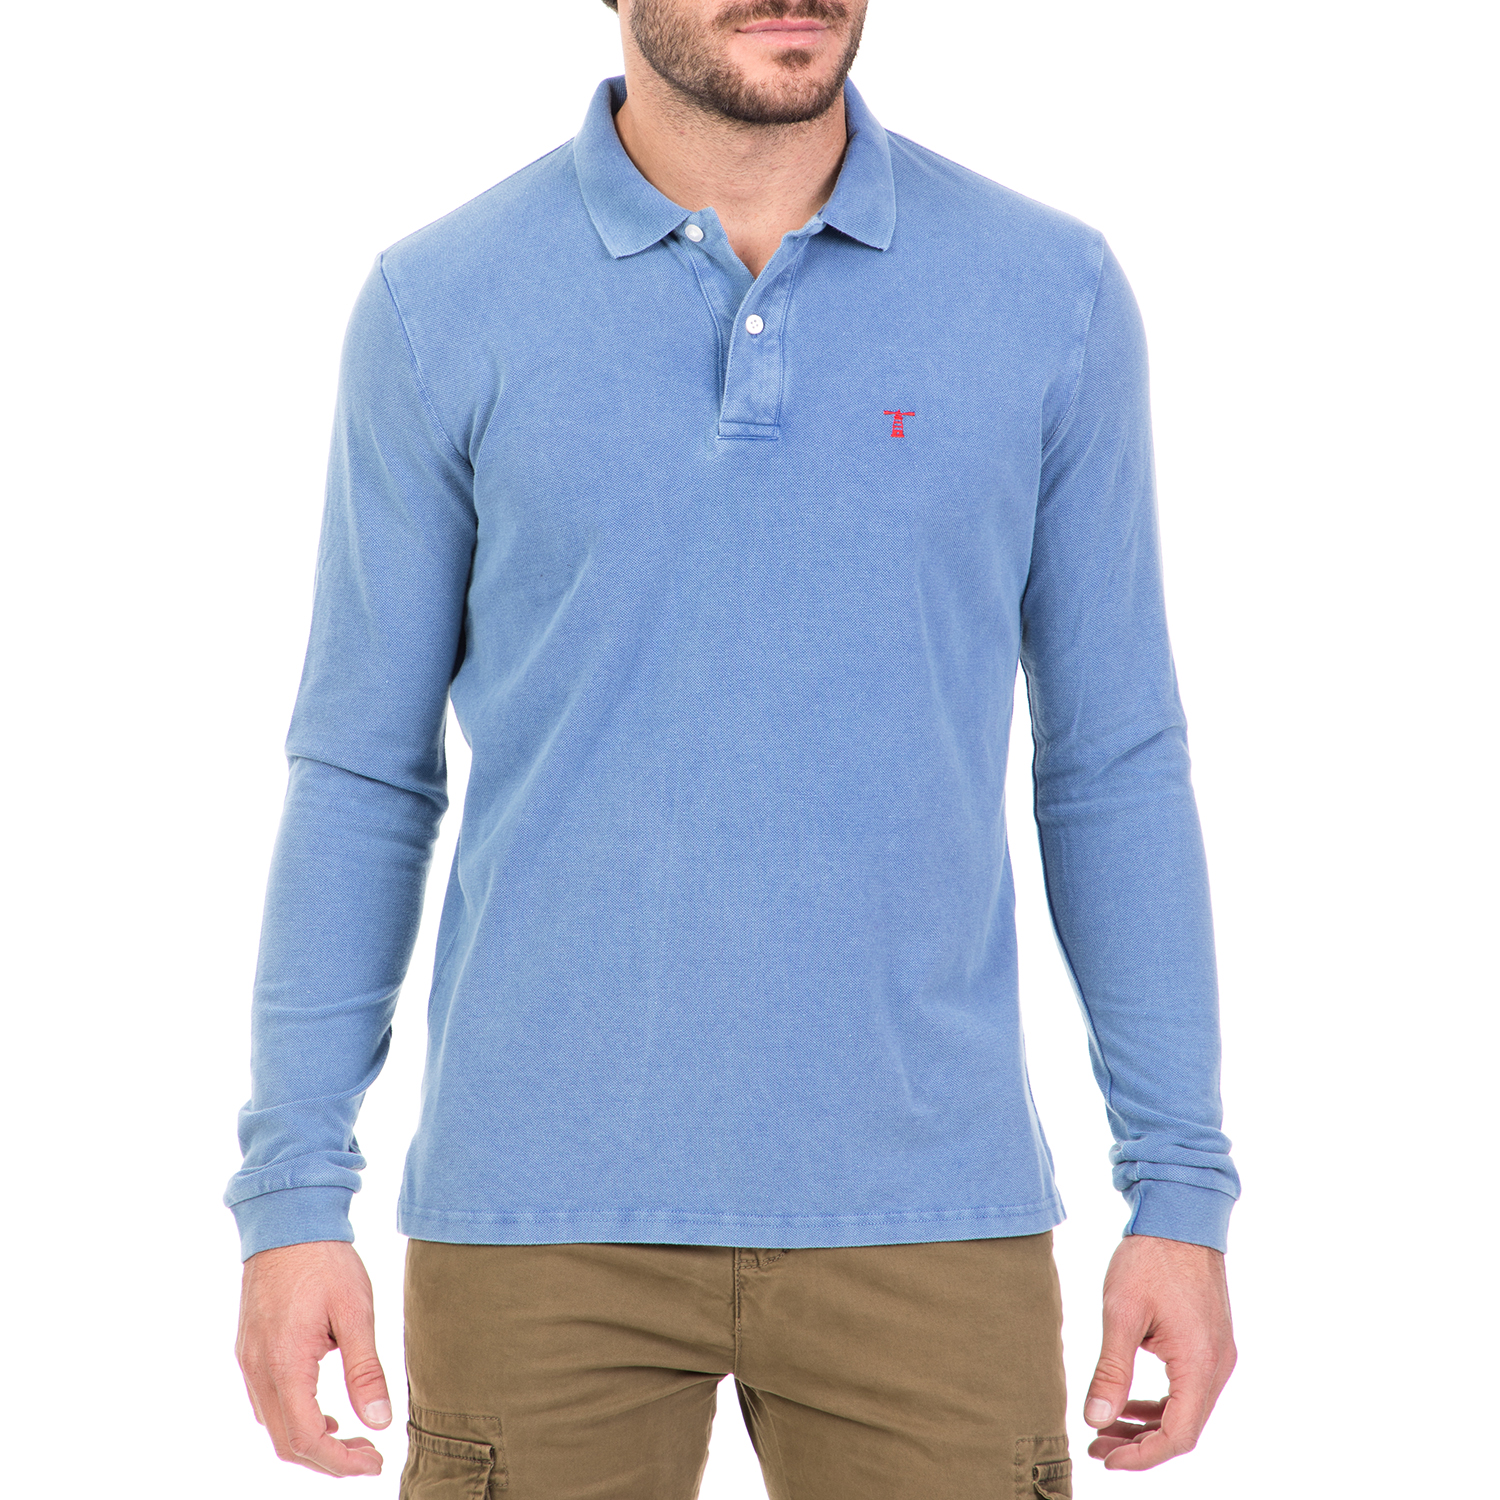 Ανδρικά/Ρούχα/Μπλούζες/Πόλο HAMPTONS - Ανδρική μακρυμάνικη πόλο μπλούζα HAMPTONS γαλάζια